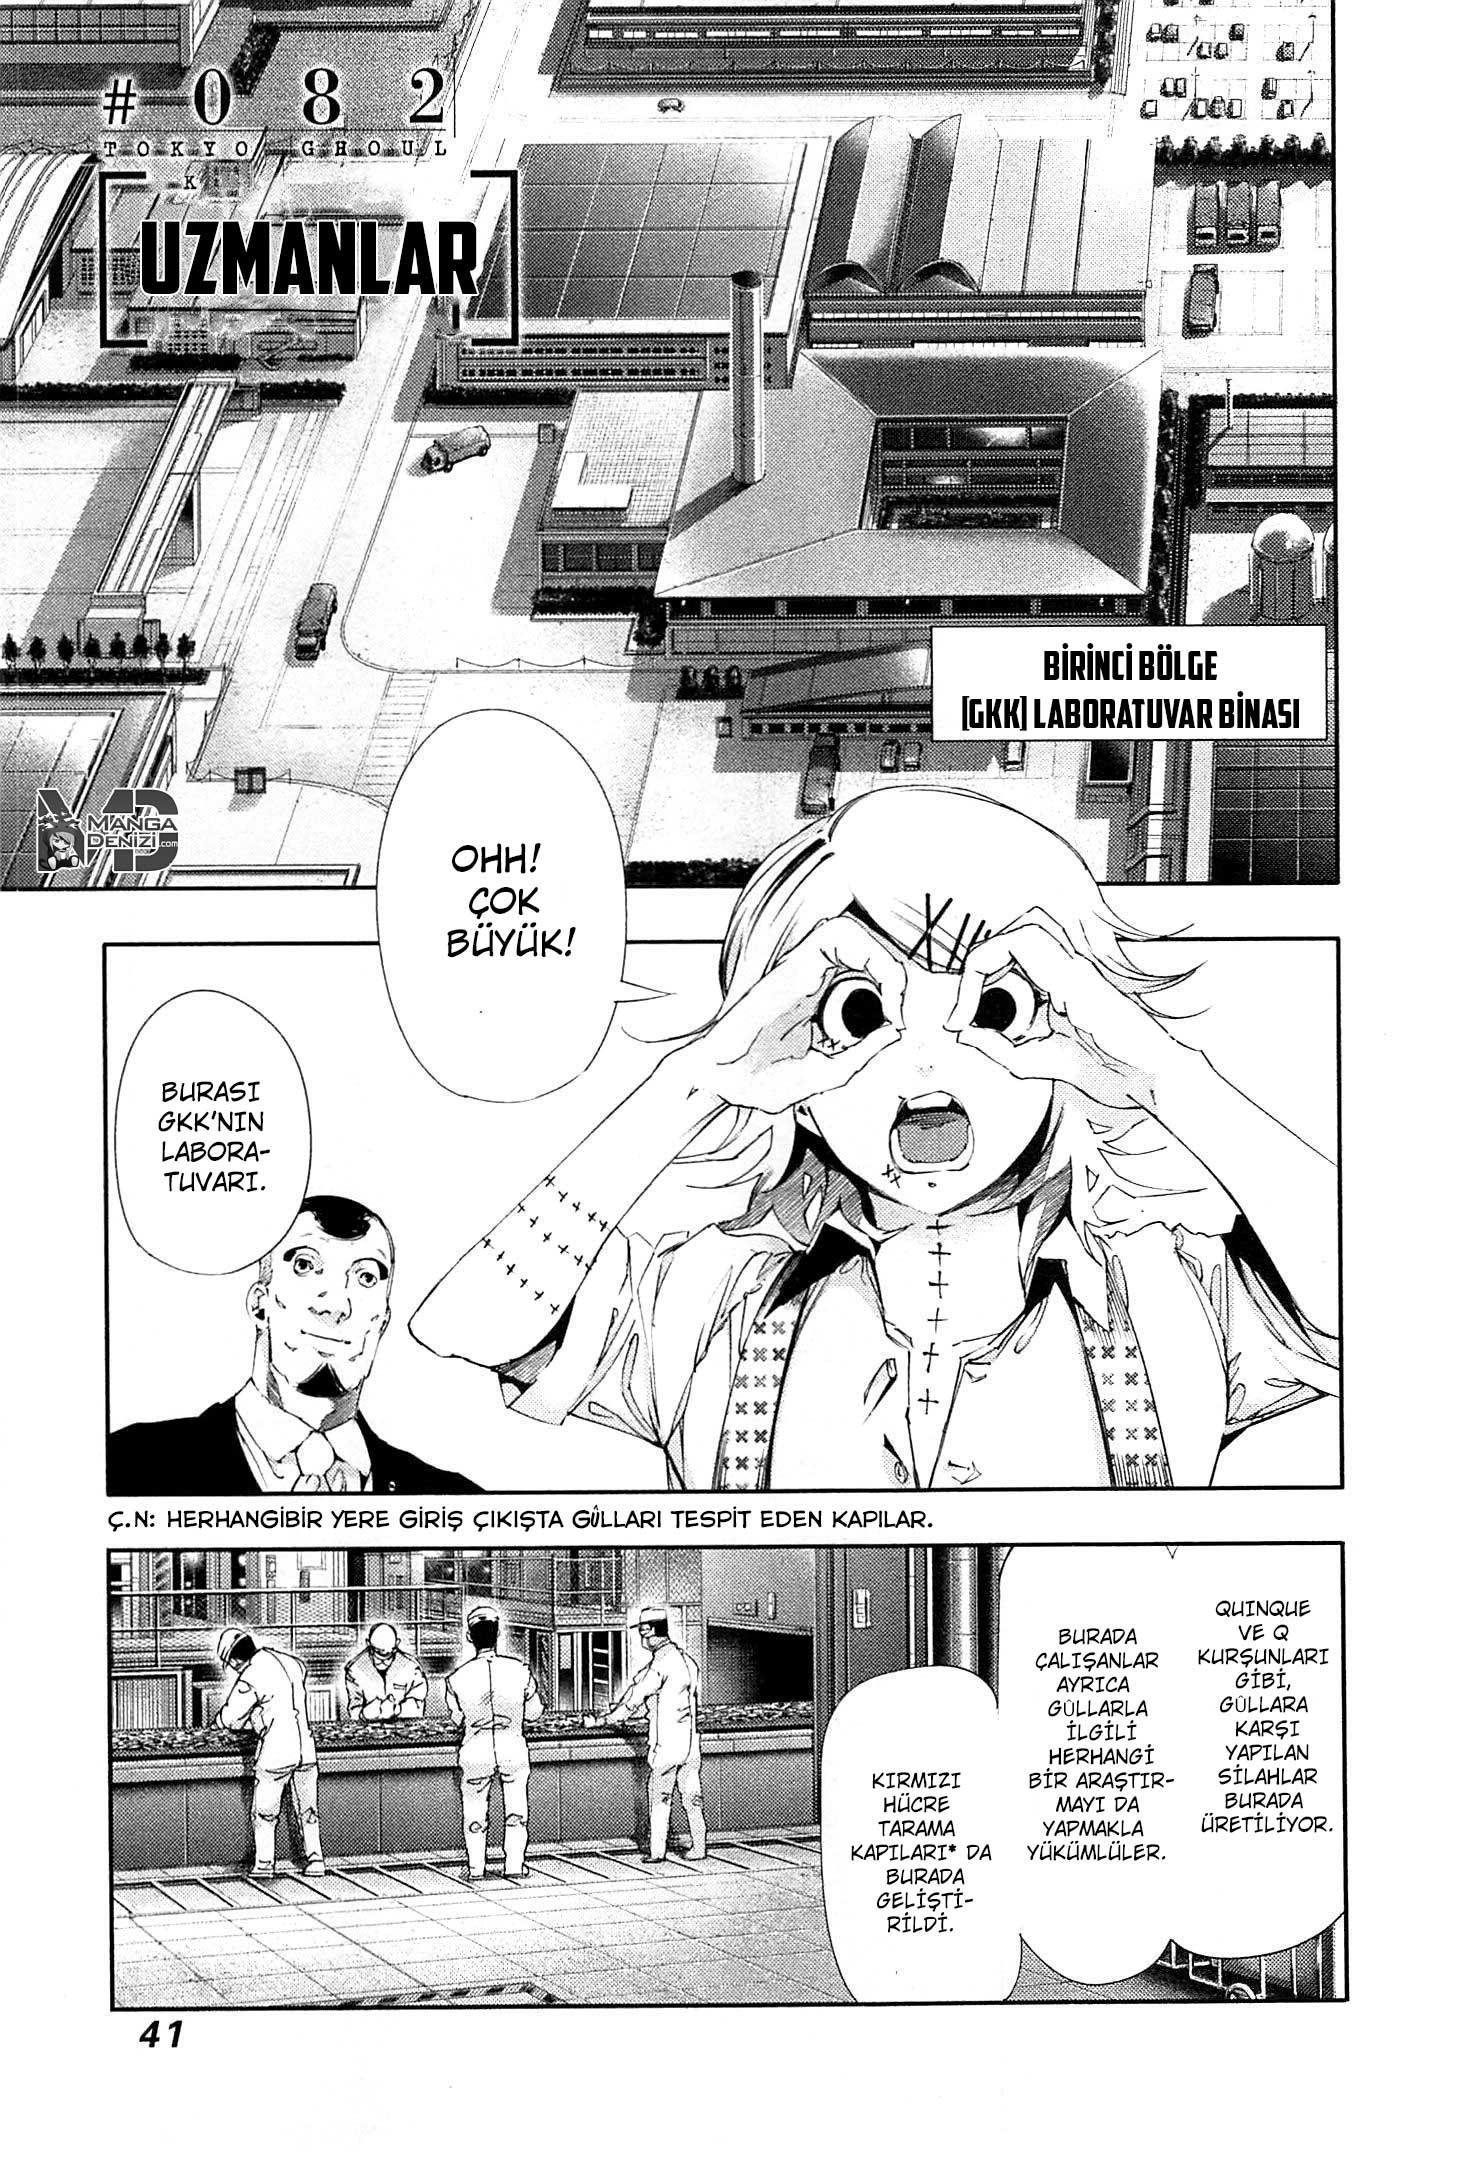 Tokyo Ghoul mangasının 082 bölümünün 2. sayfasını okuyorsunuz.